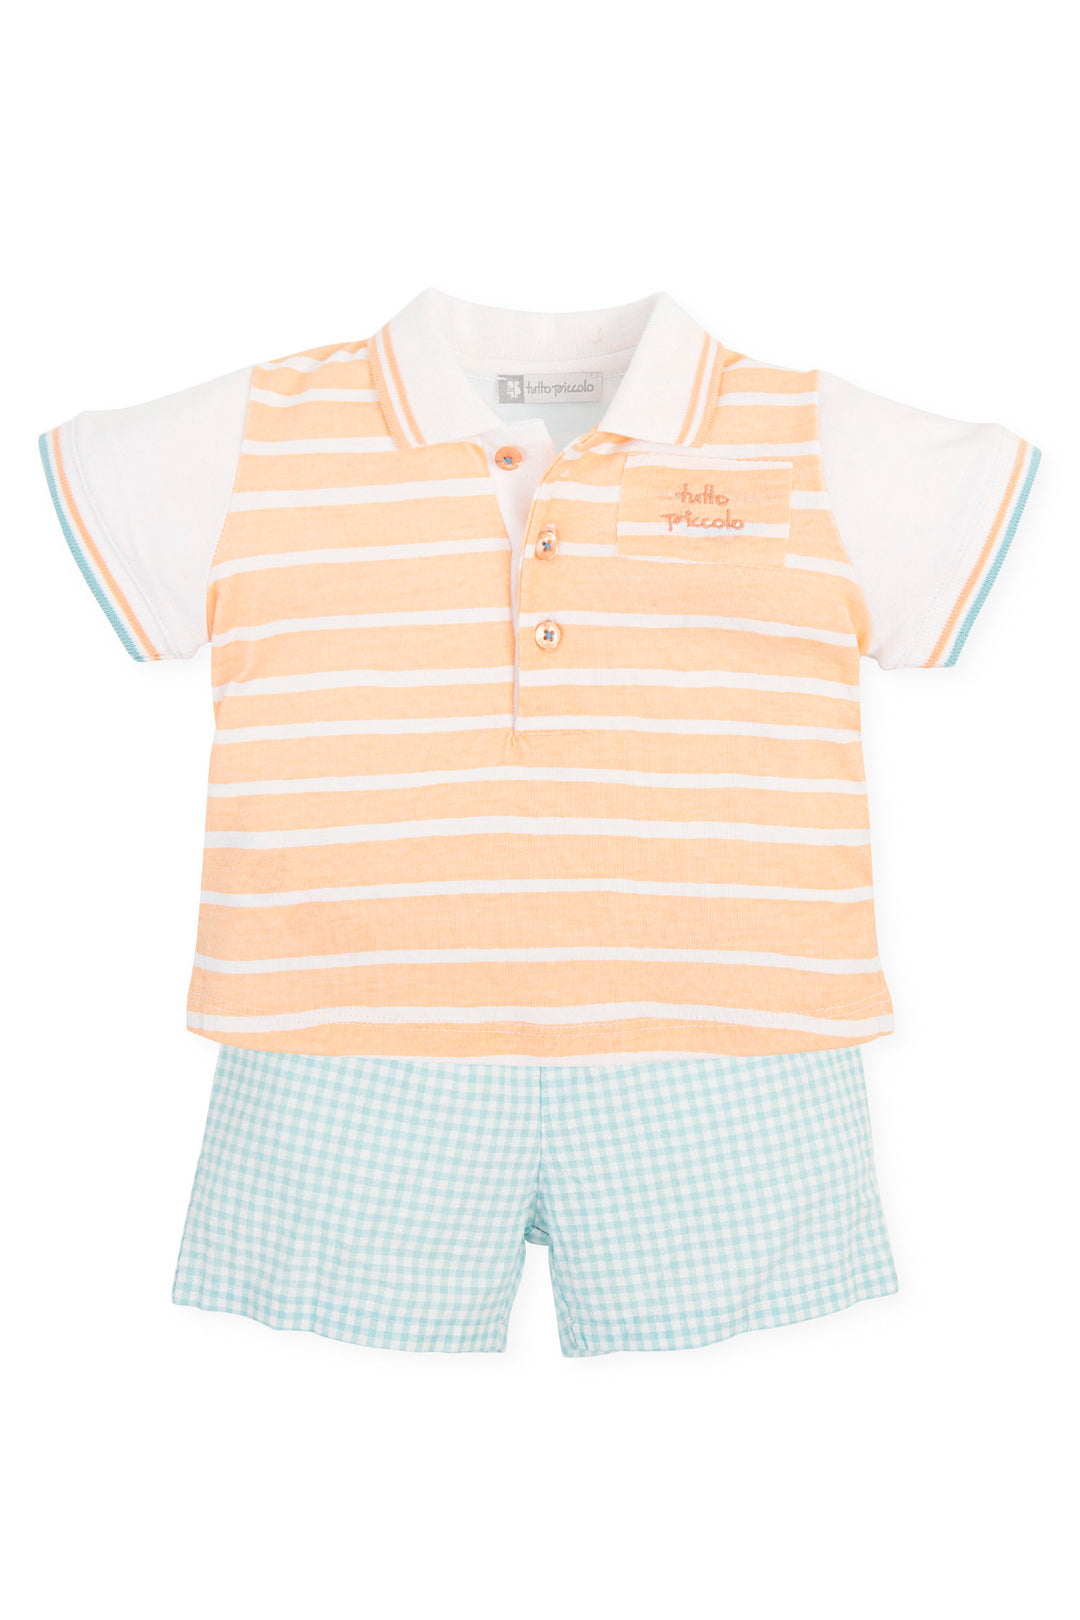 Tutto Piccolo "Gabriel" Peach & Aquamarine Polo Shirt & Shorts | Millie and John